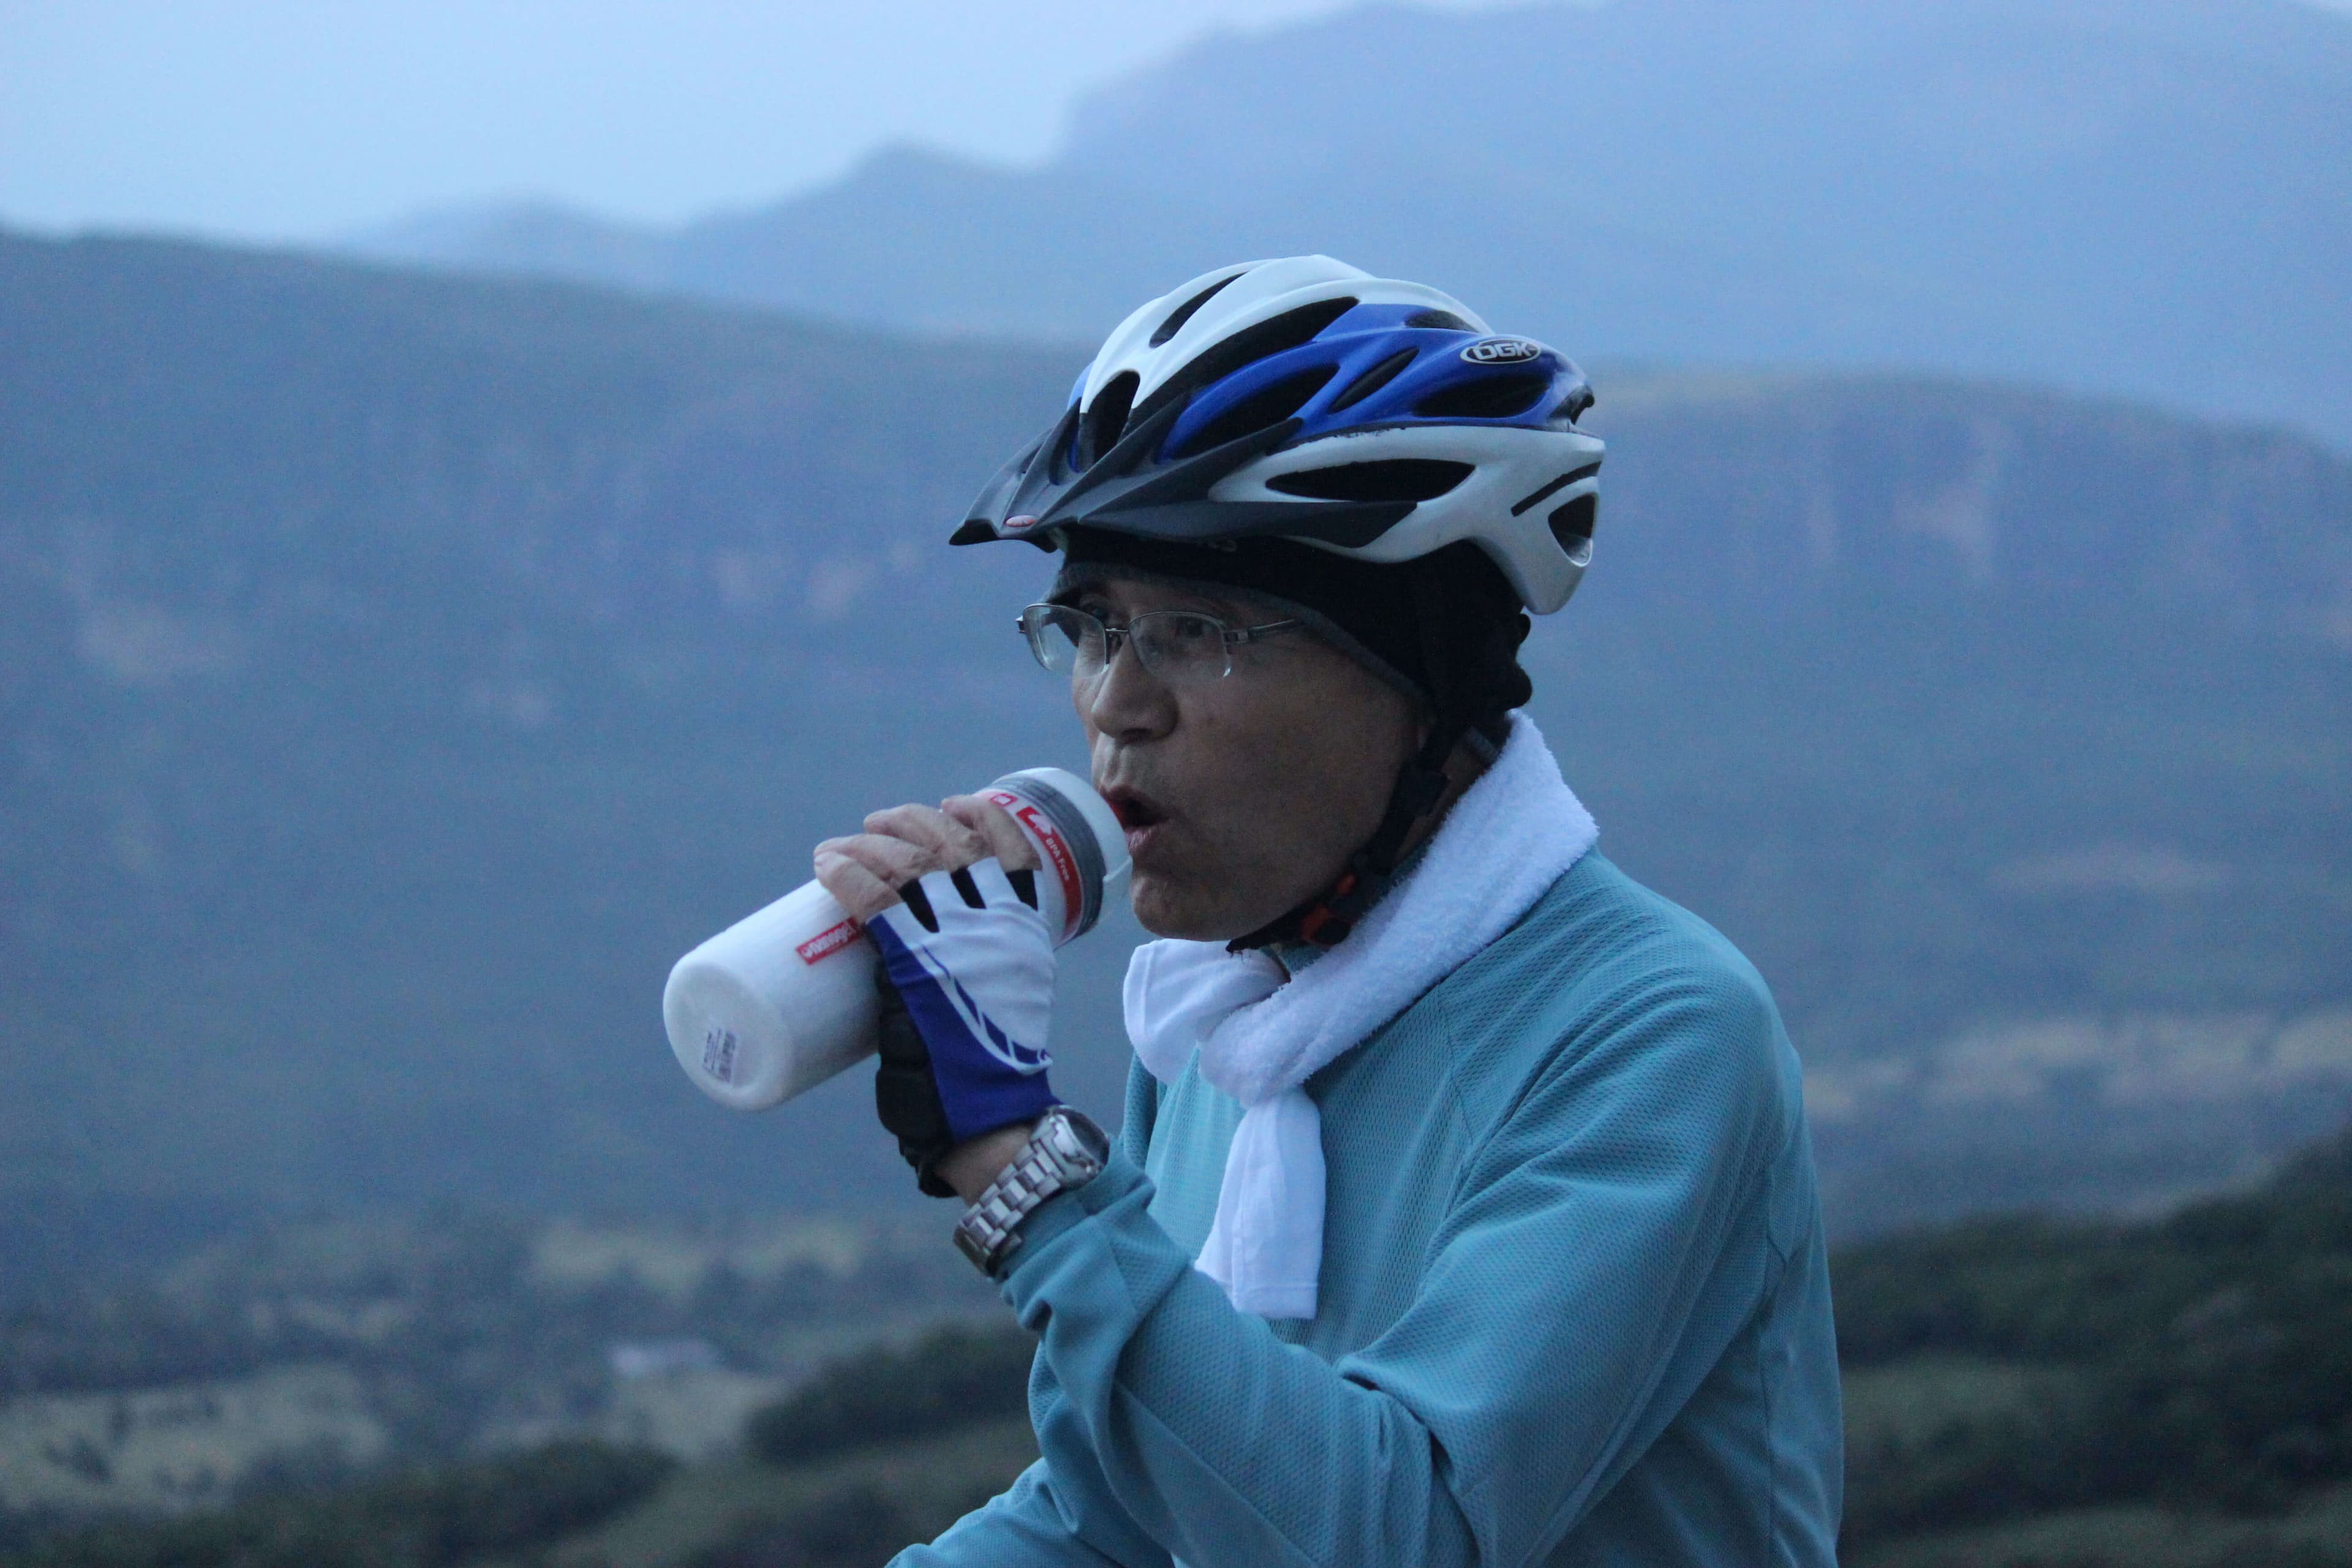 Турист делает перерыв и освежается во время велосипедного тура Meemure.